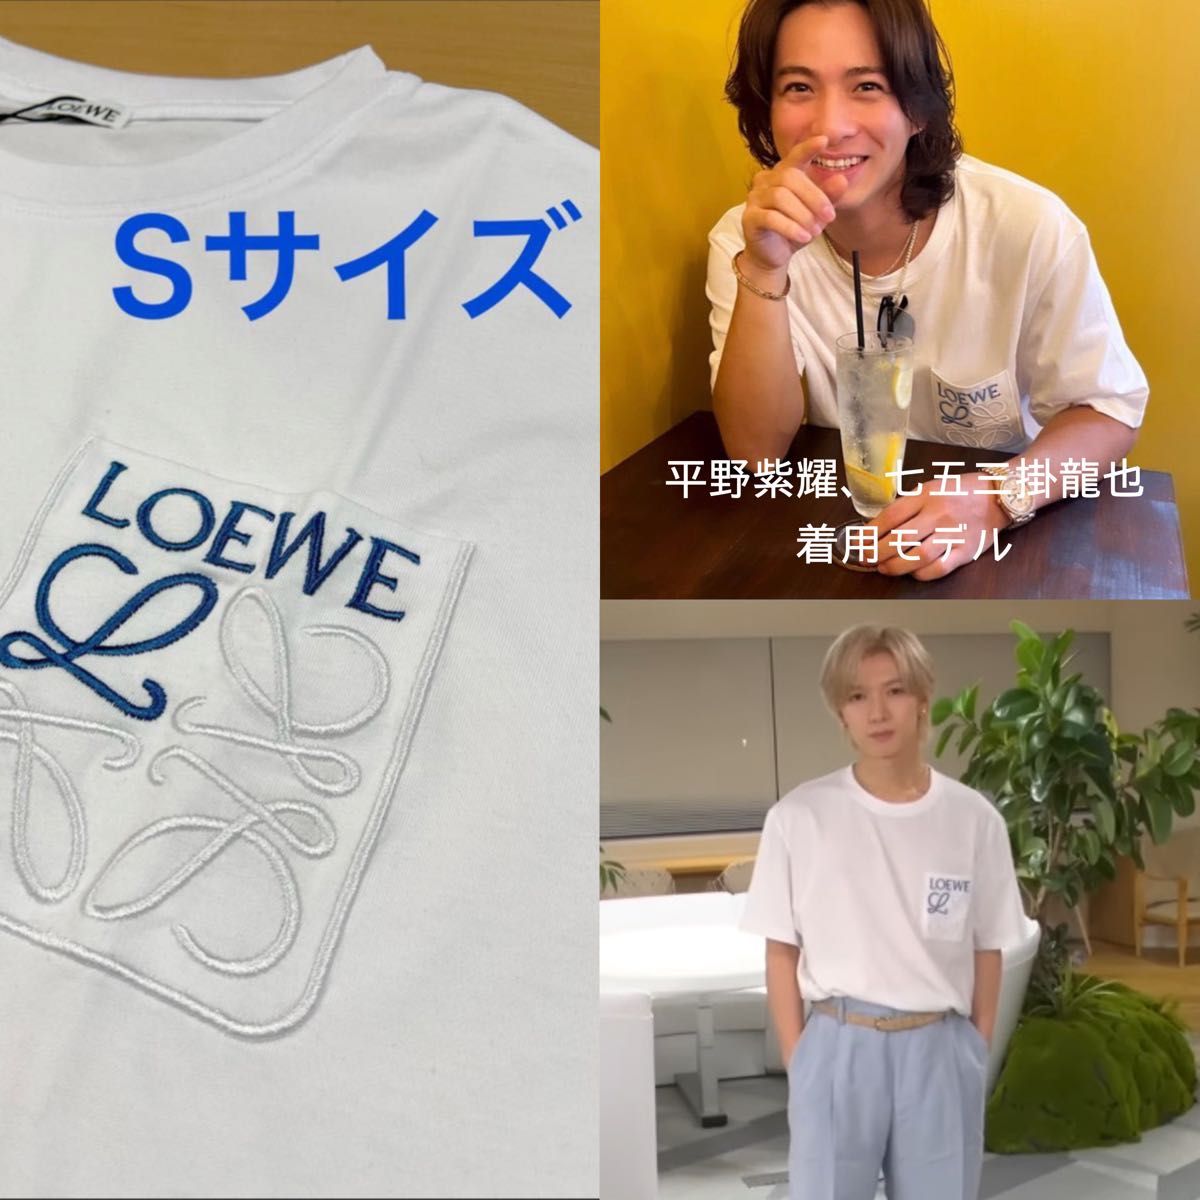 【新品】LOEWE ロエベ Tシャツ ポケット刺繍 並行輸入品 平野紫耀 七五三掛龍也 着用